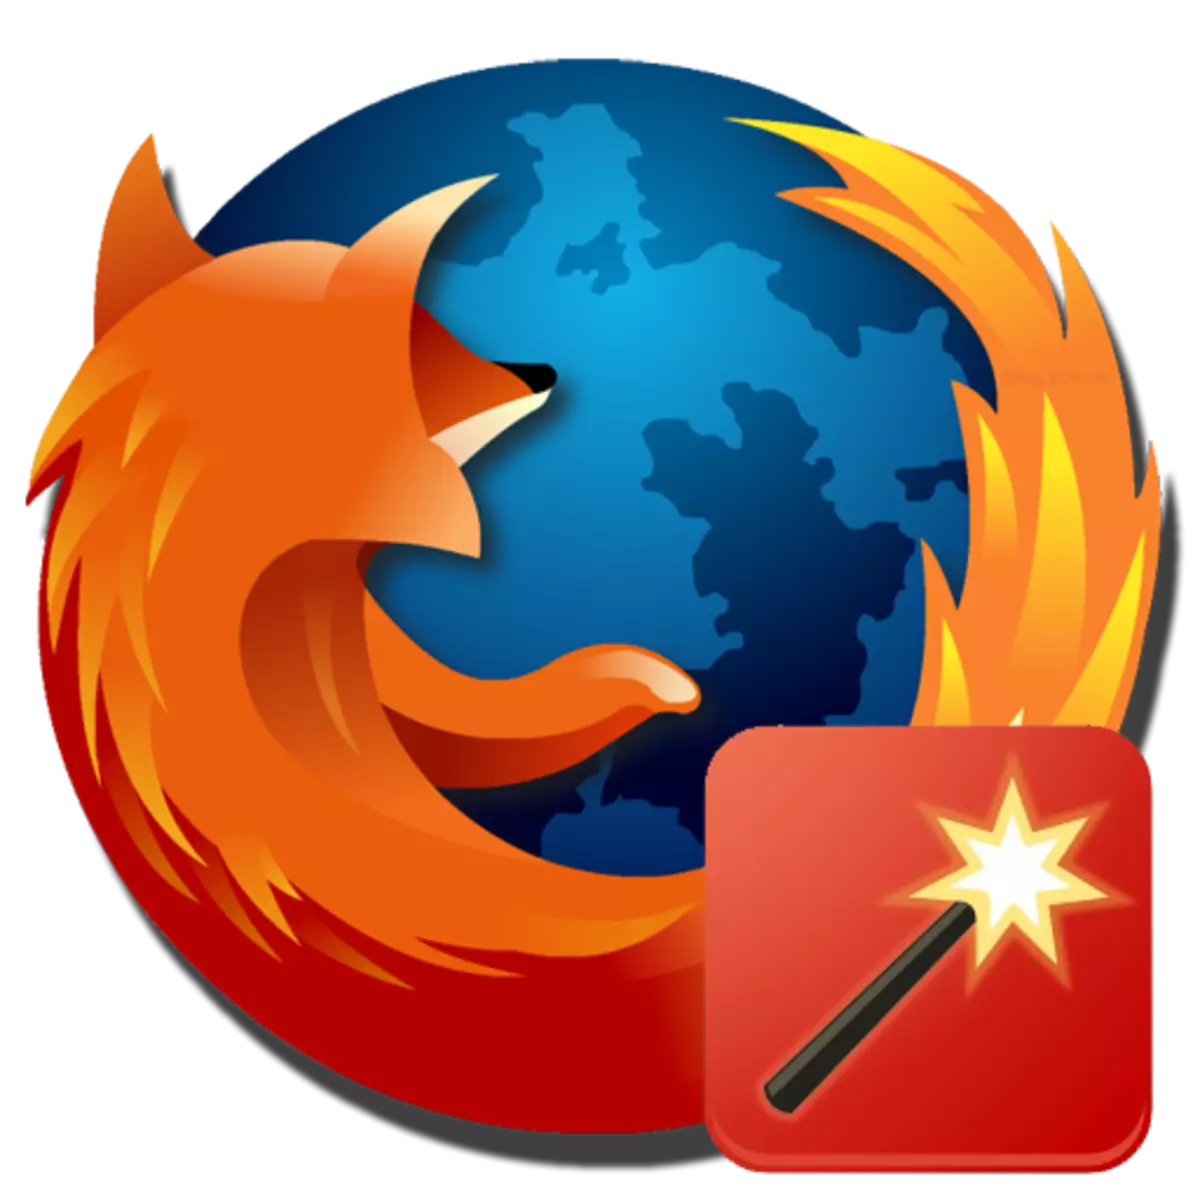 Firefoxerako YouTube-rako ekintza magikoak